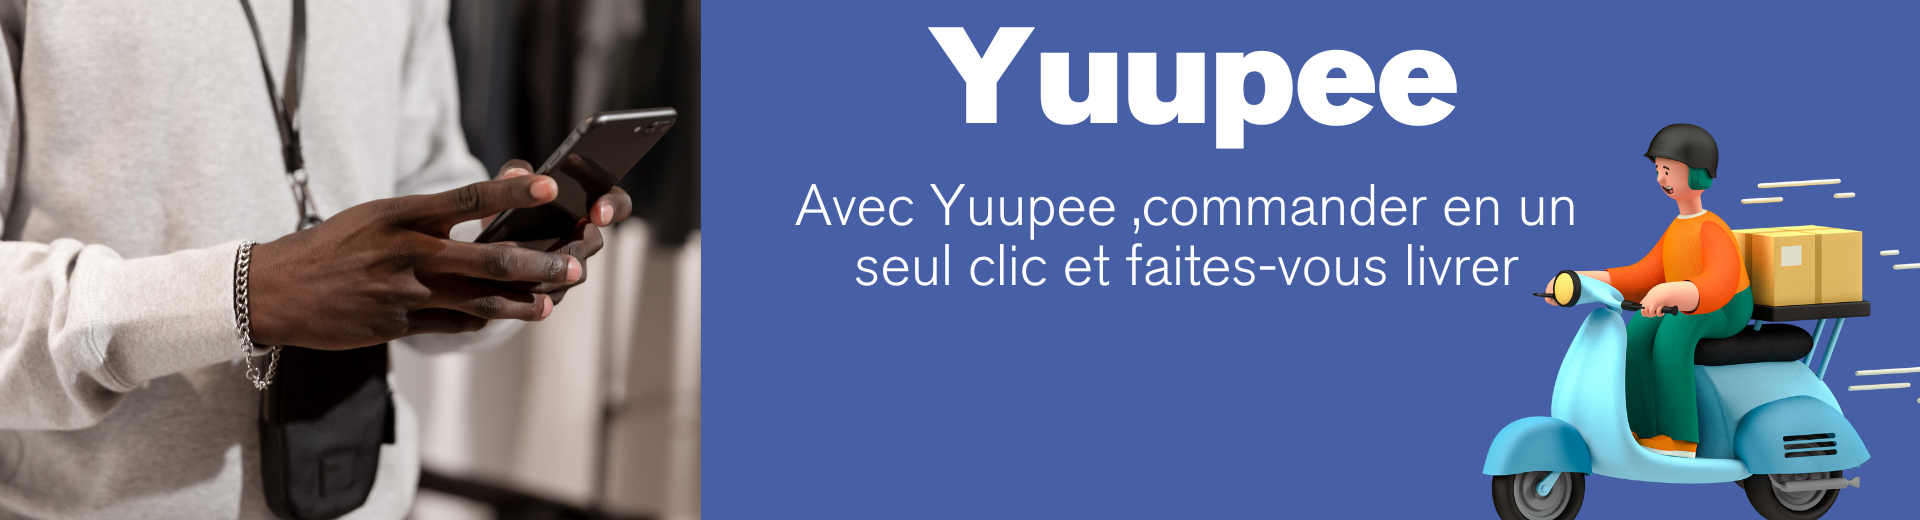 yuupee